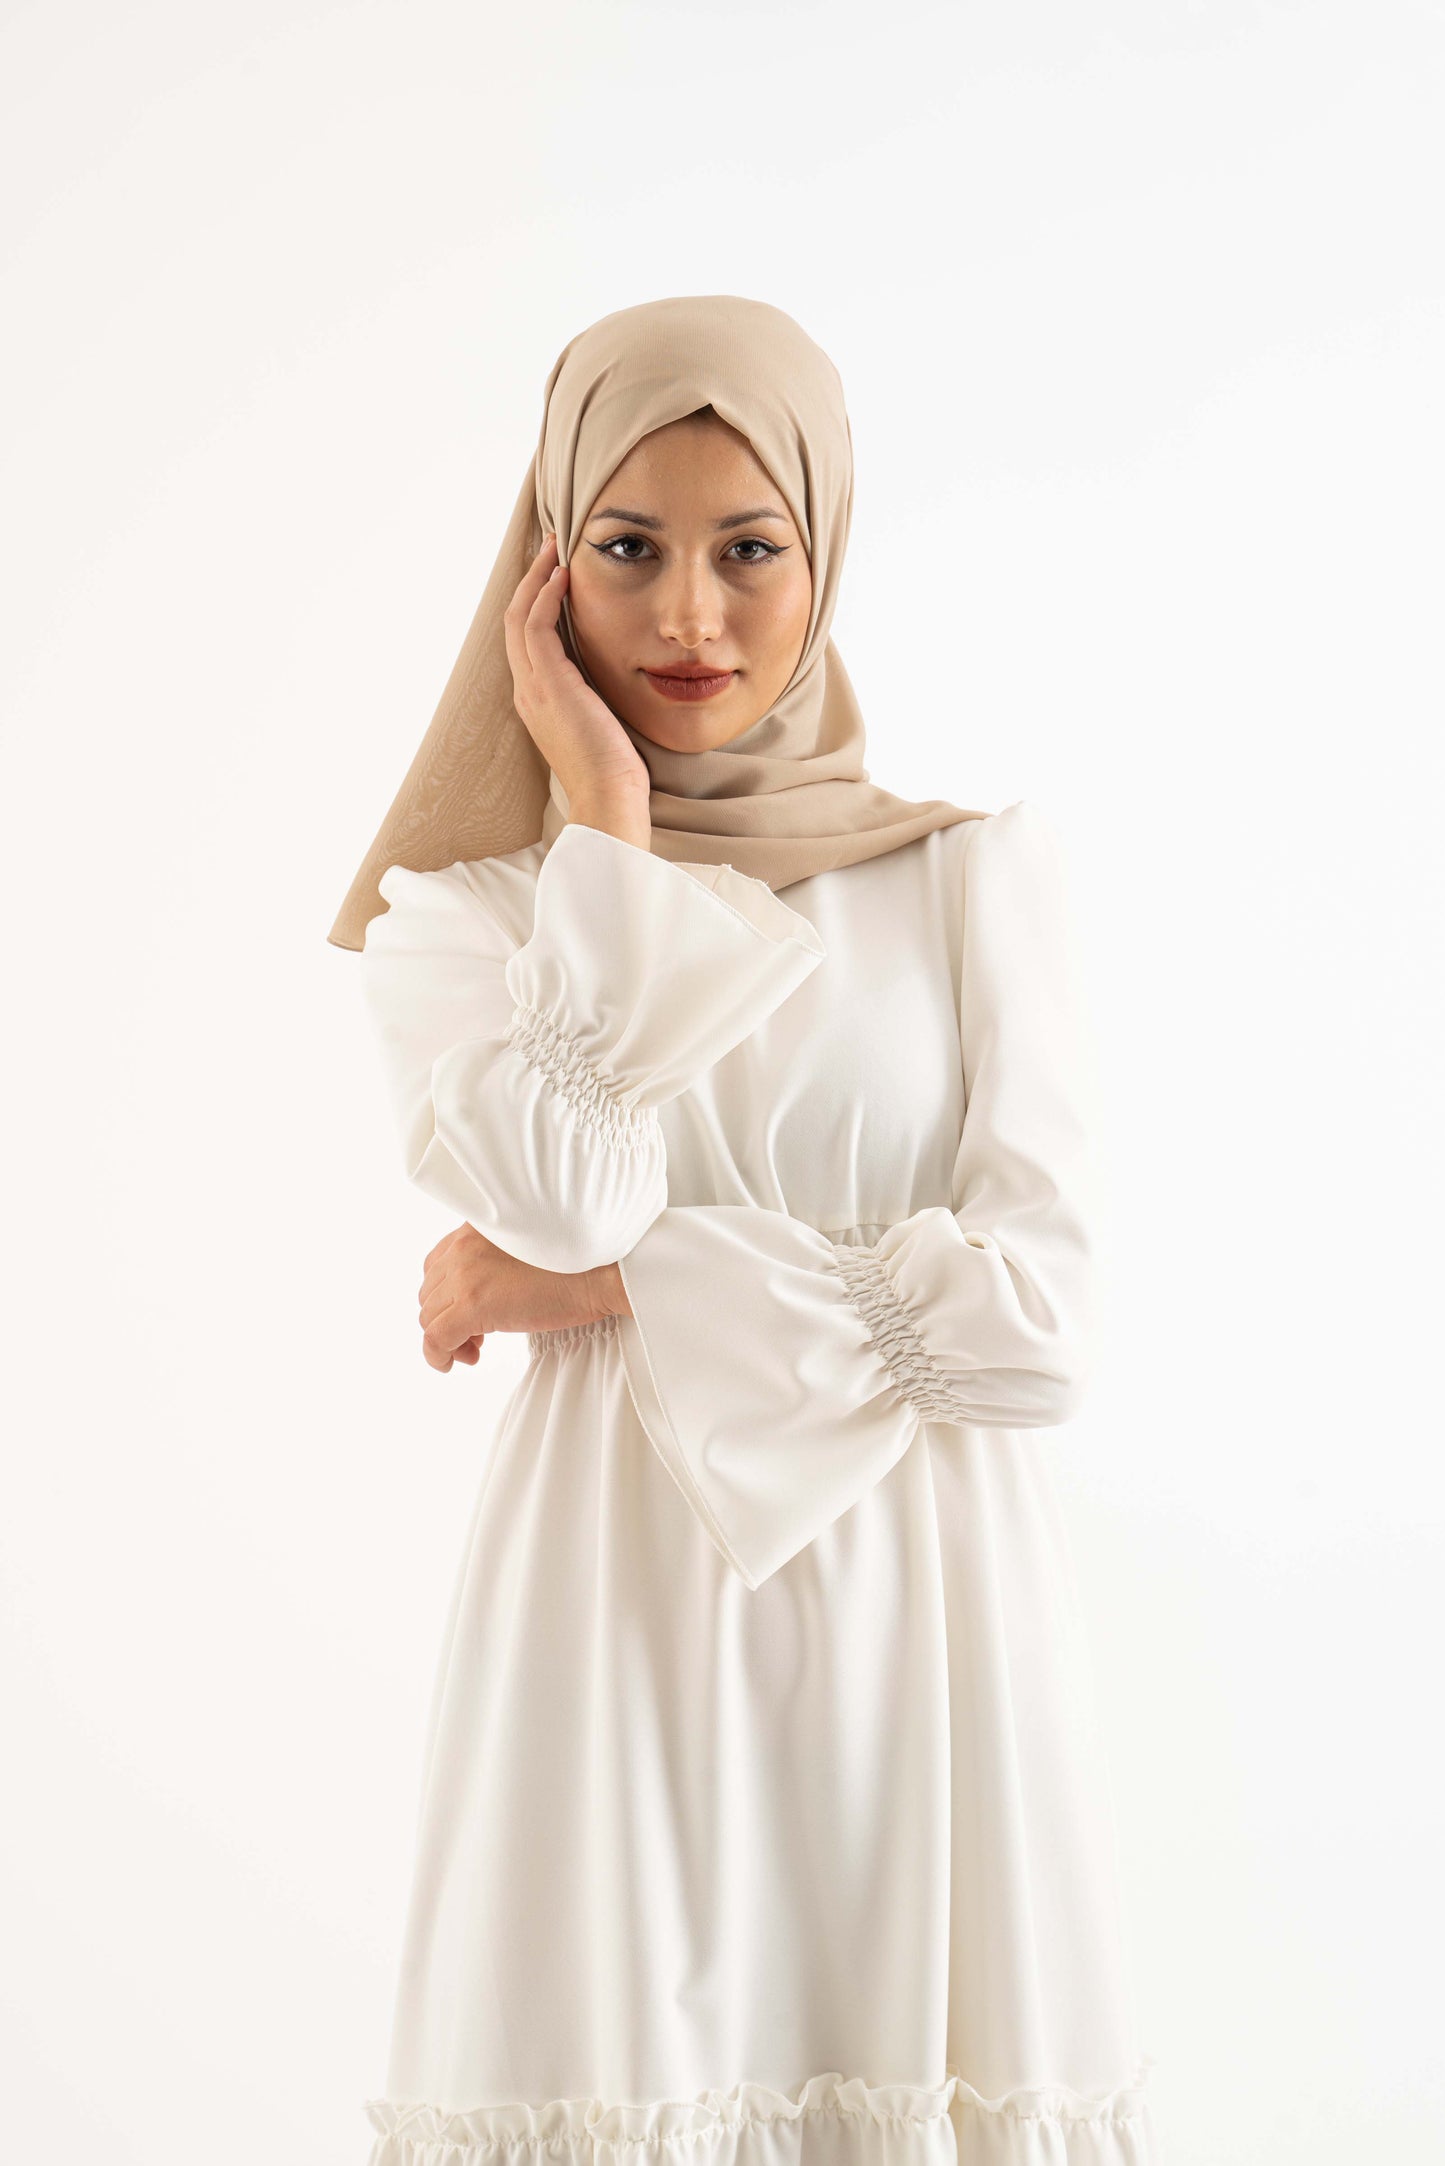 The Lonna Modest Dress Modest Dresses, Abaya, Long Sleeve dress!